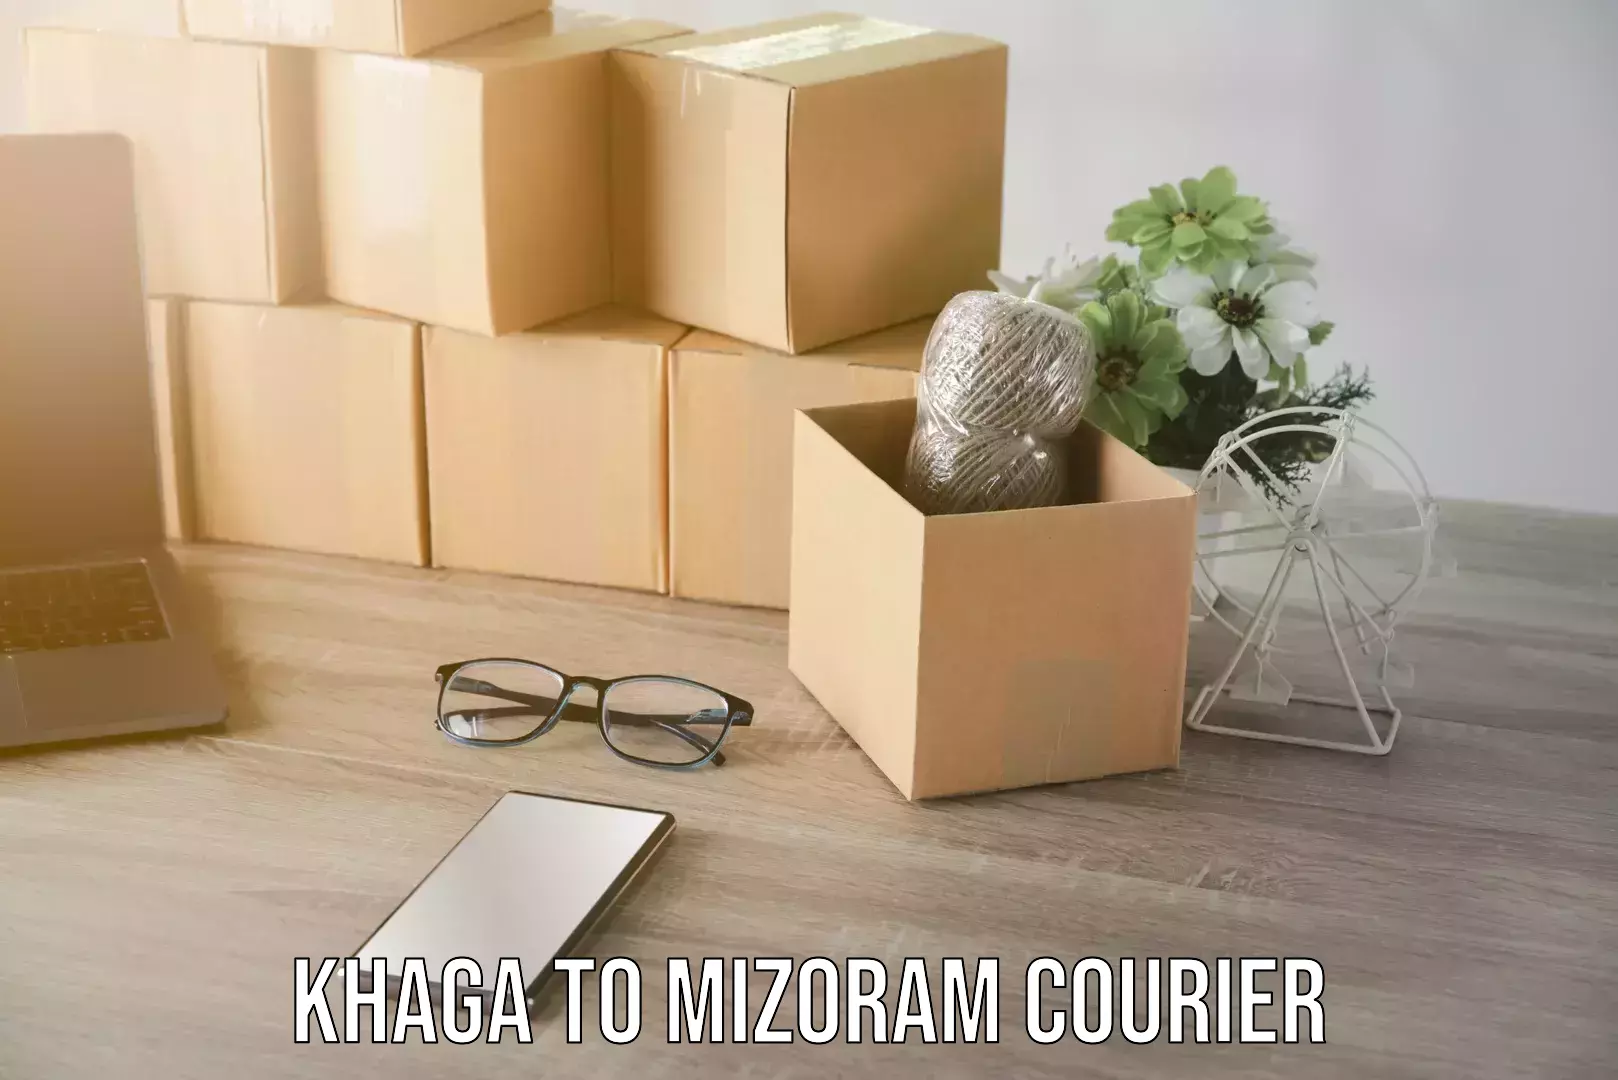 Efficient furniture movers Khaga to Mizoram